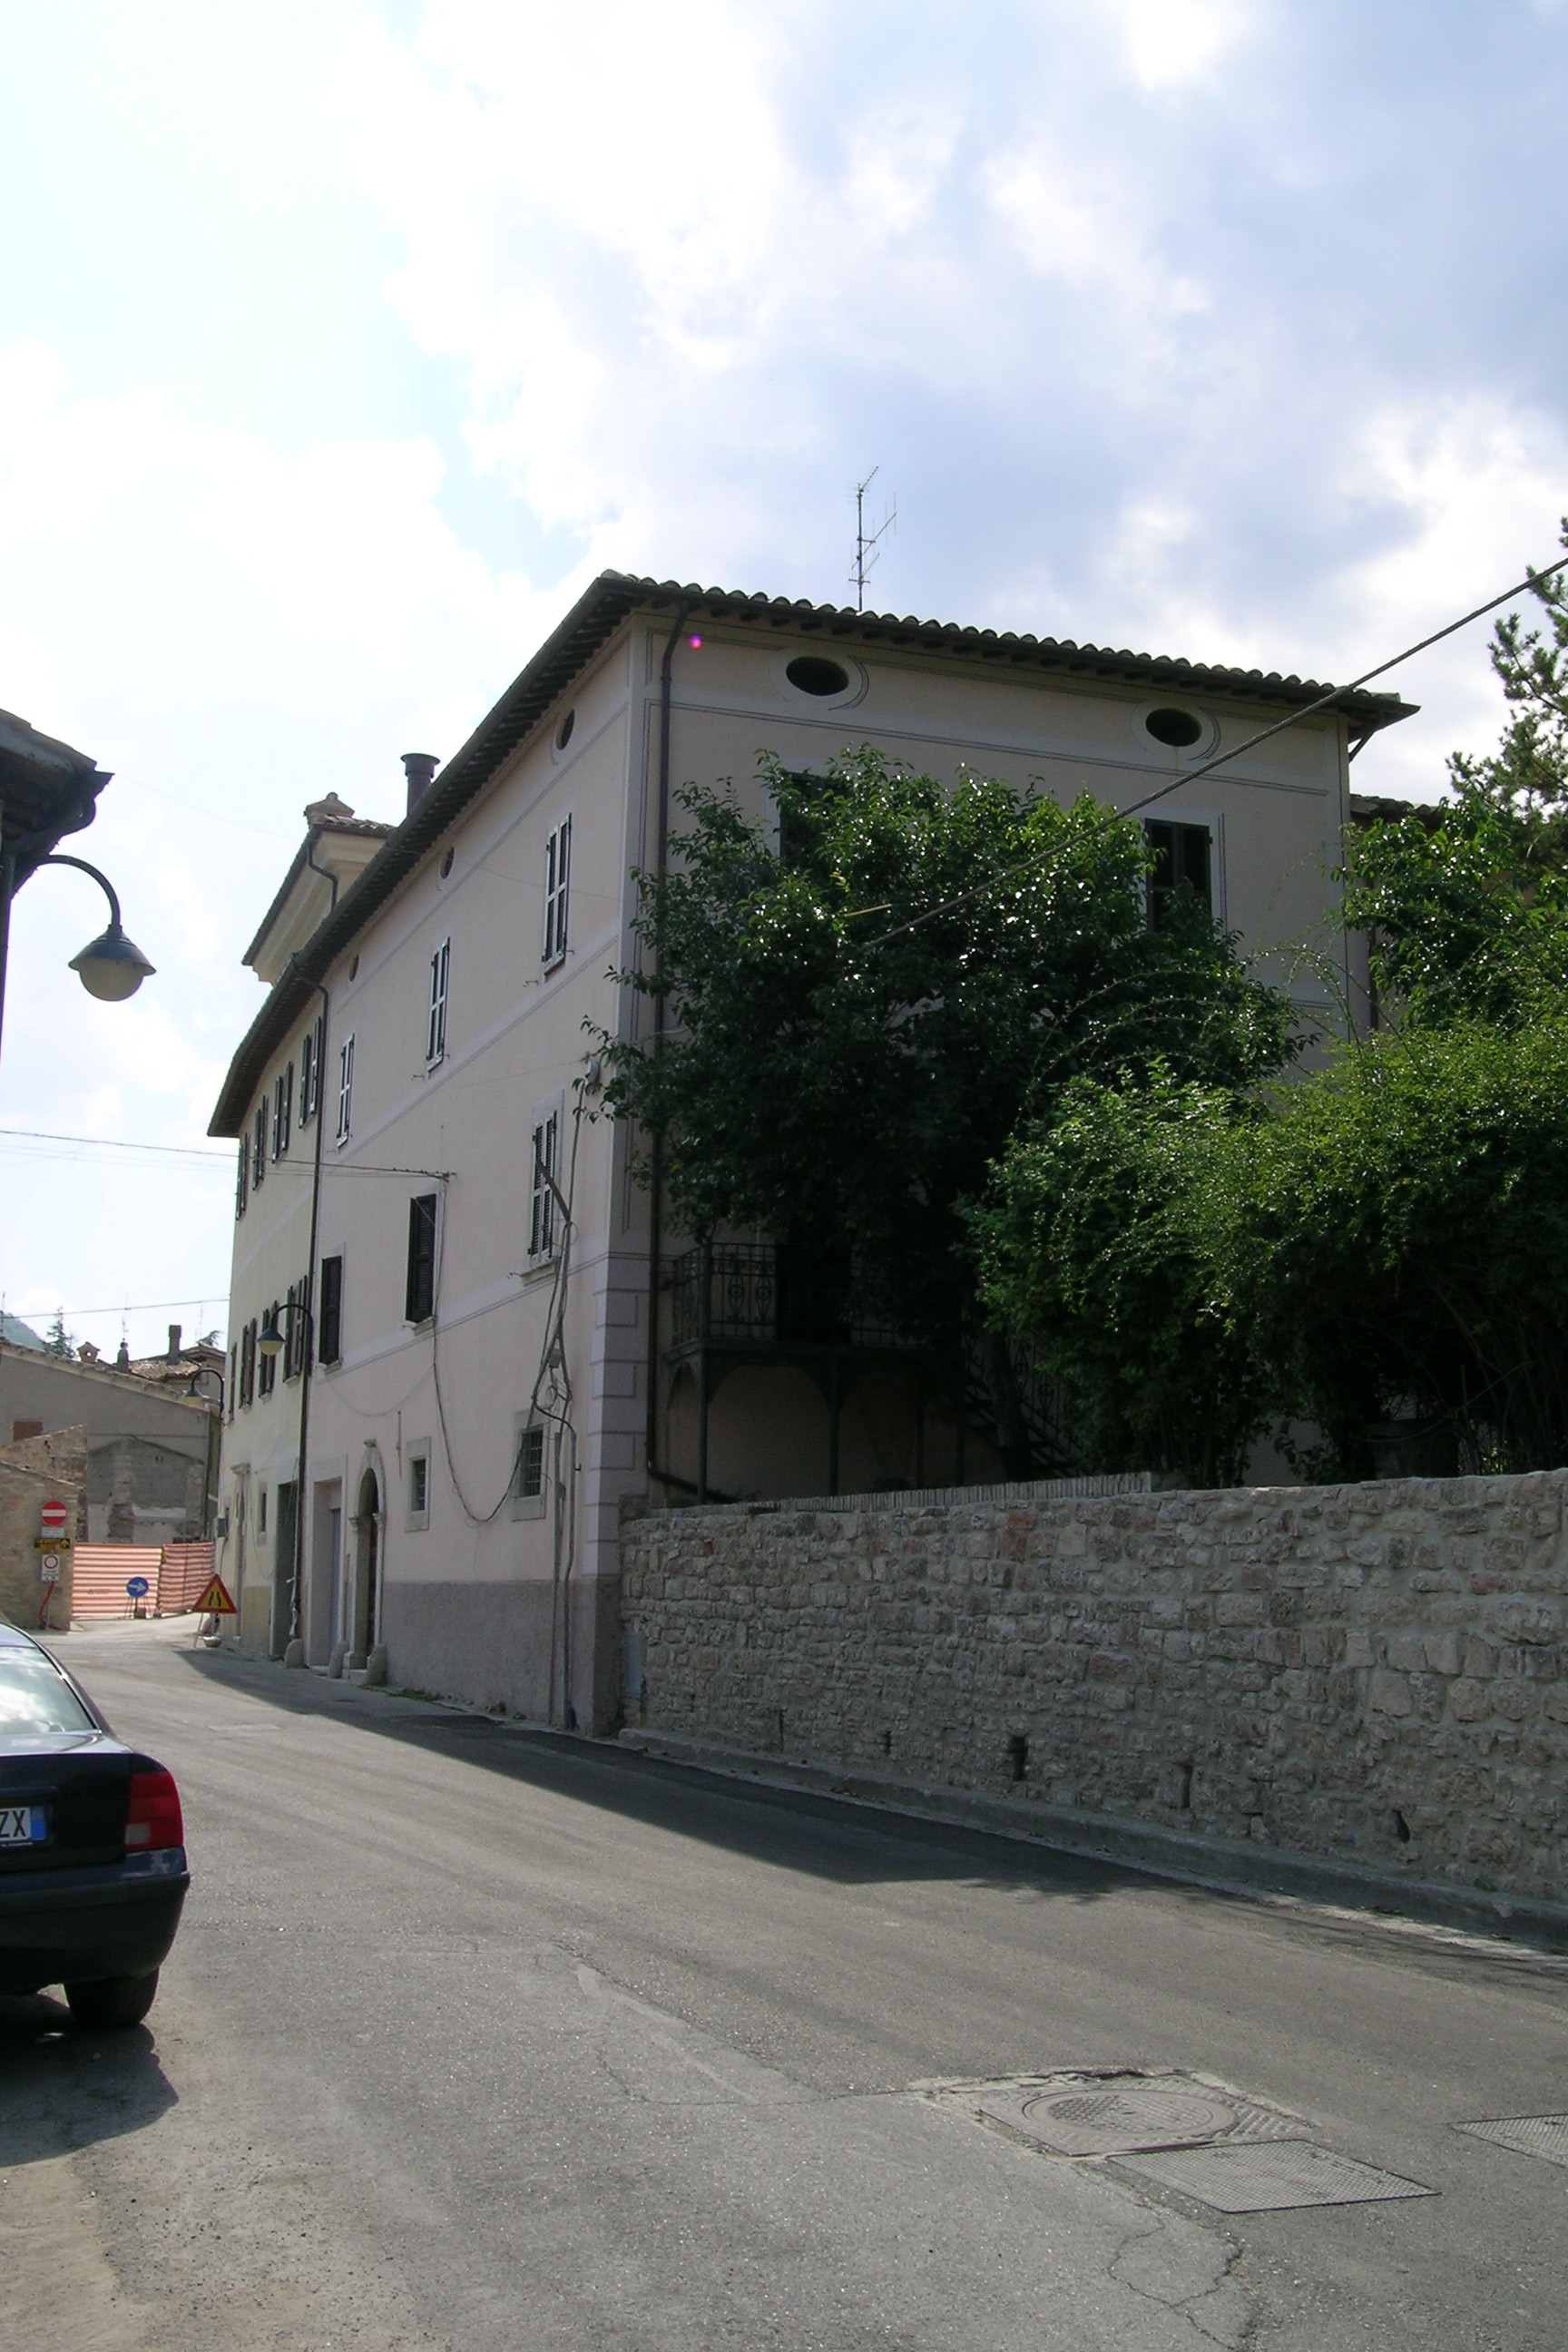 Palazzo di appartamenti (palazzo, di appartamenti) - Pieve Torina (MC) 